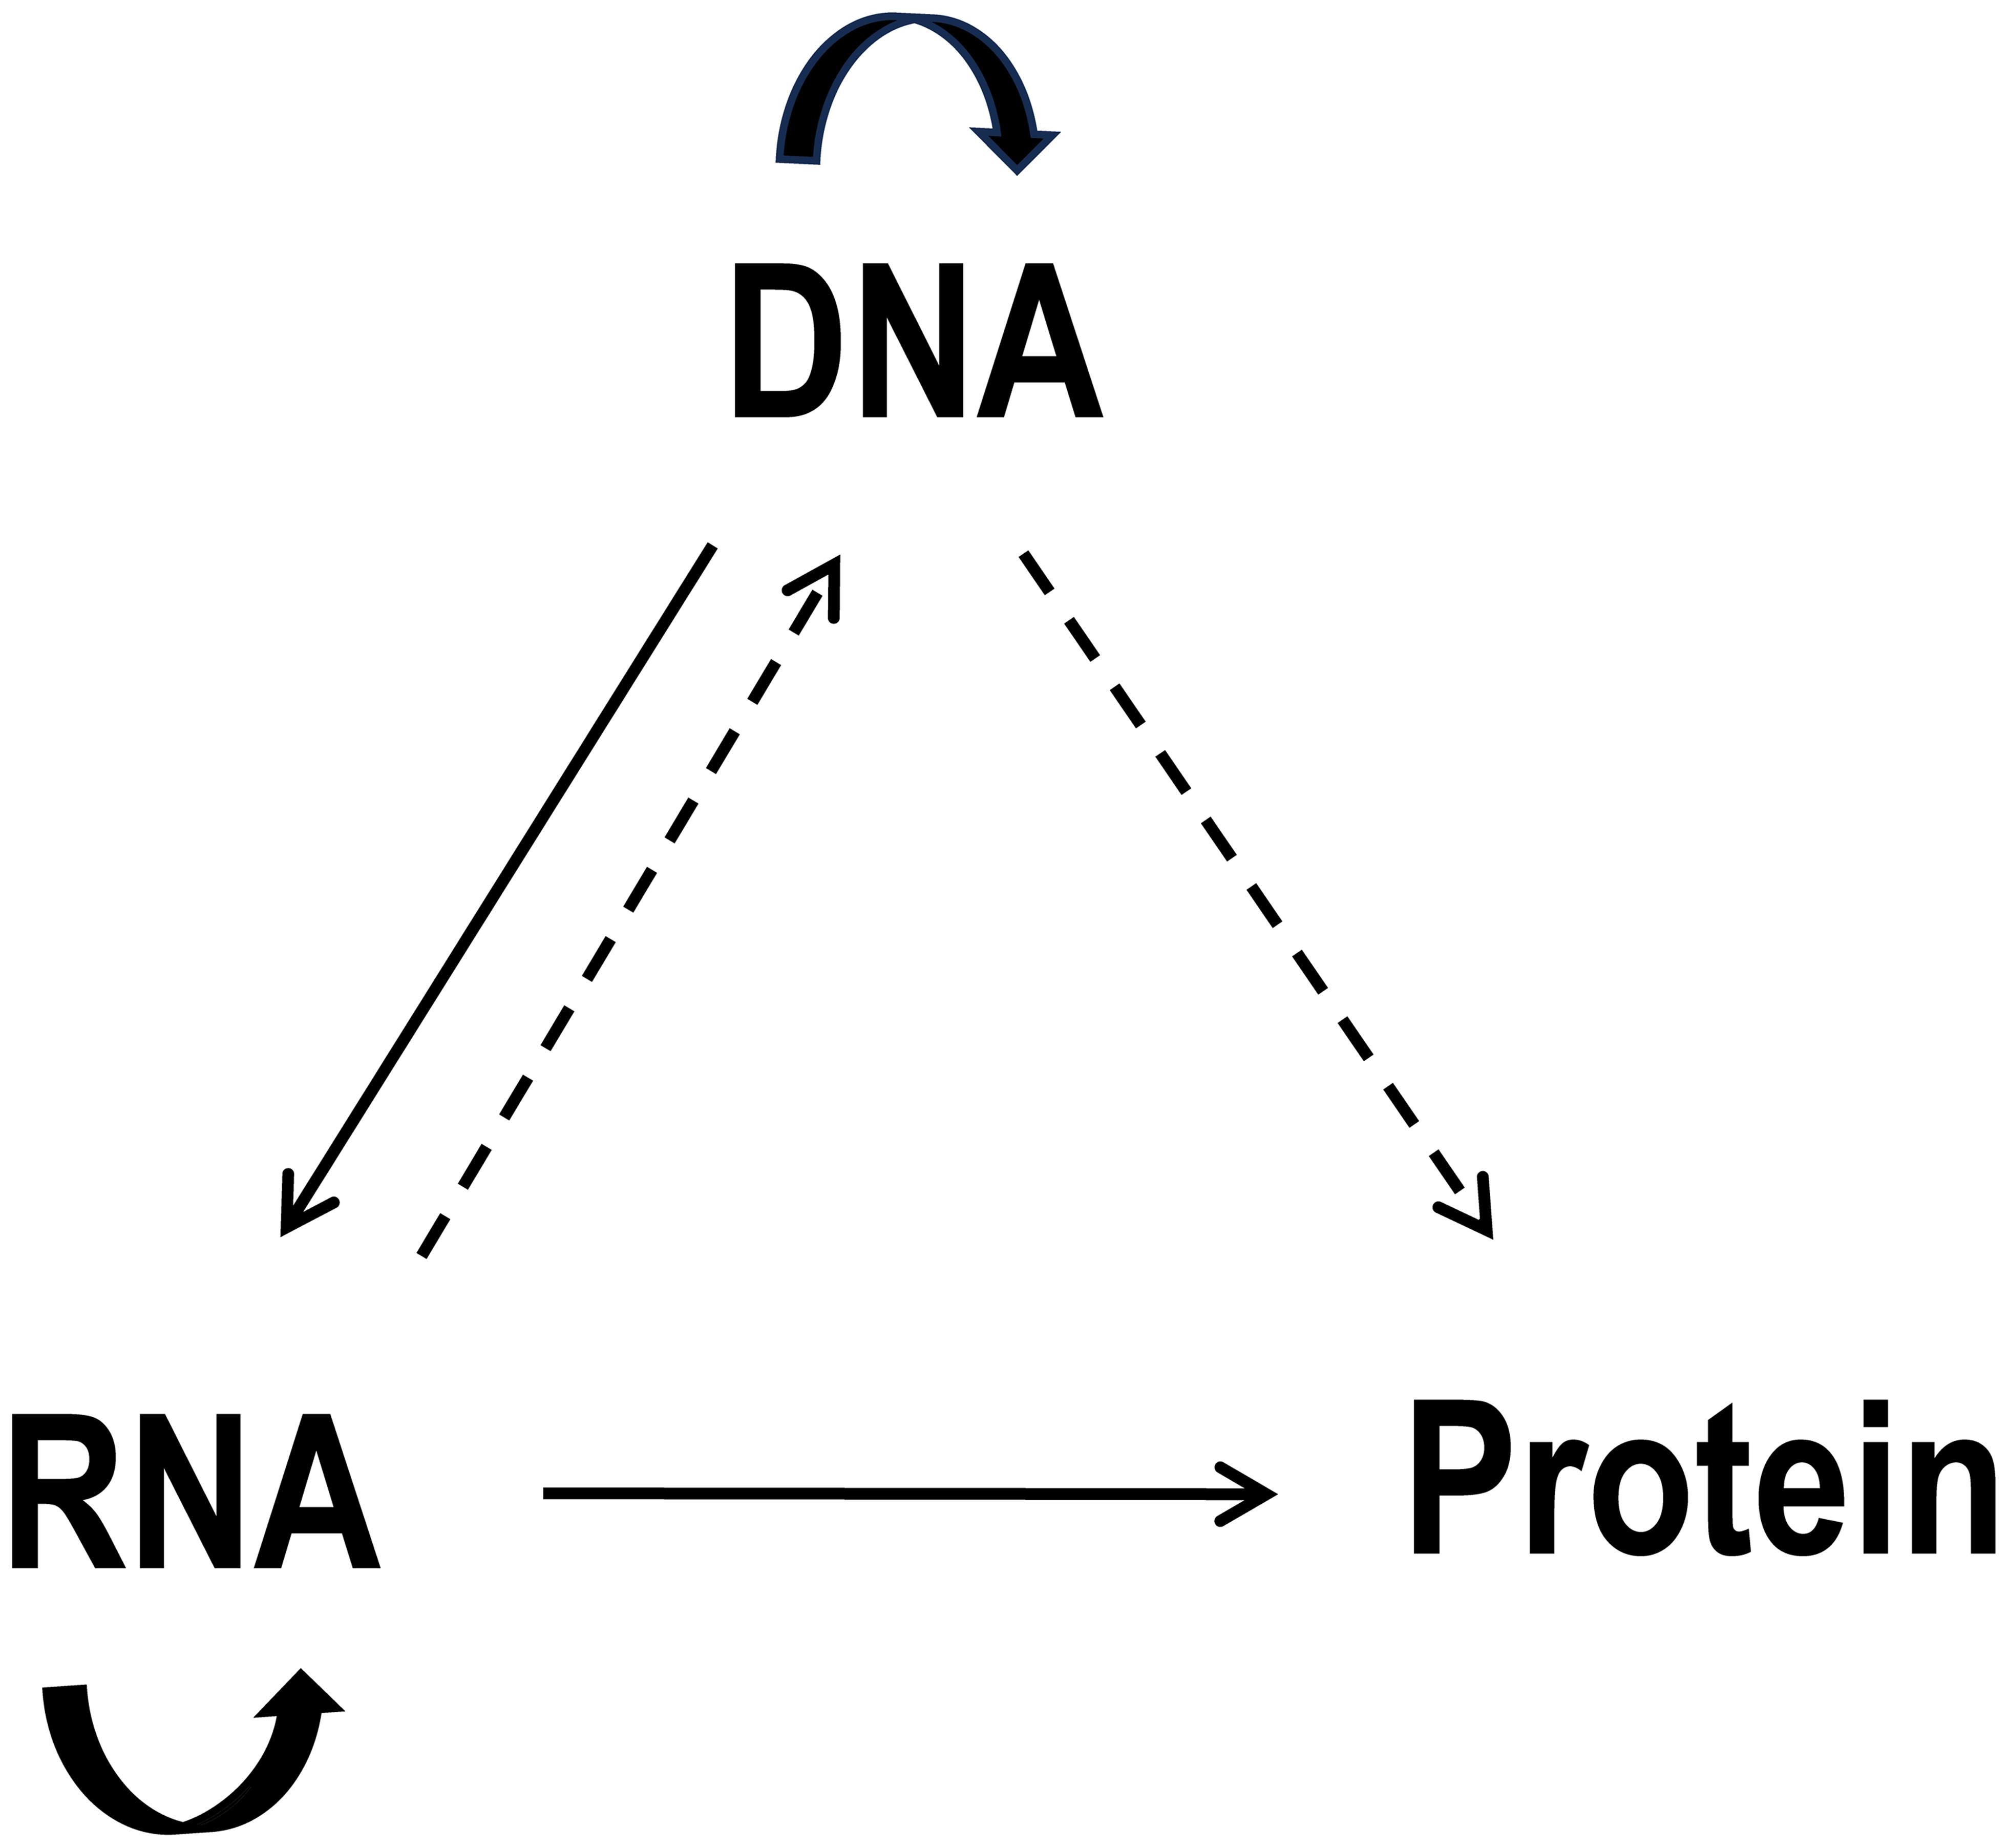 The diagram describes the central dogma of molecular biology.